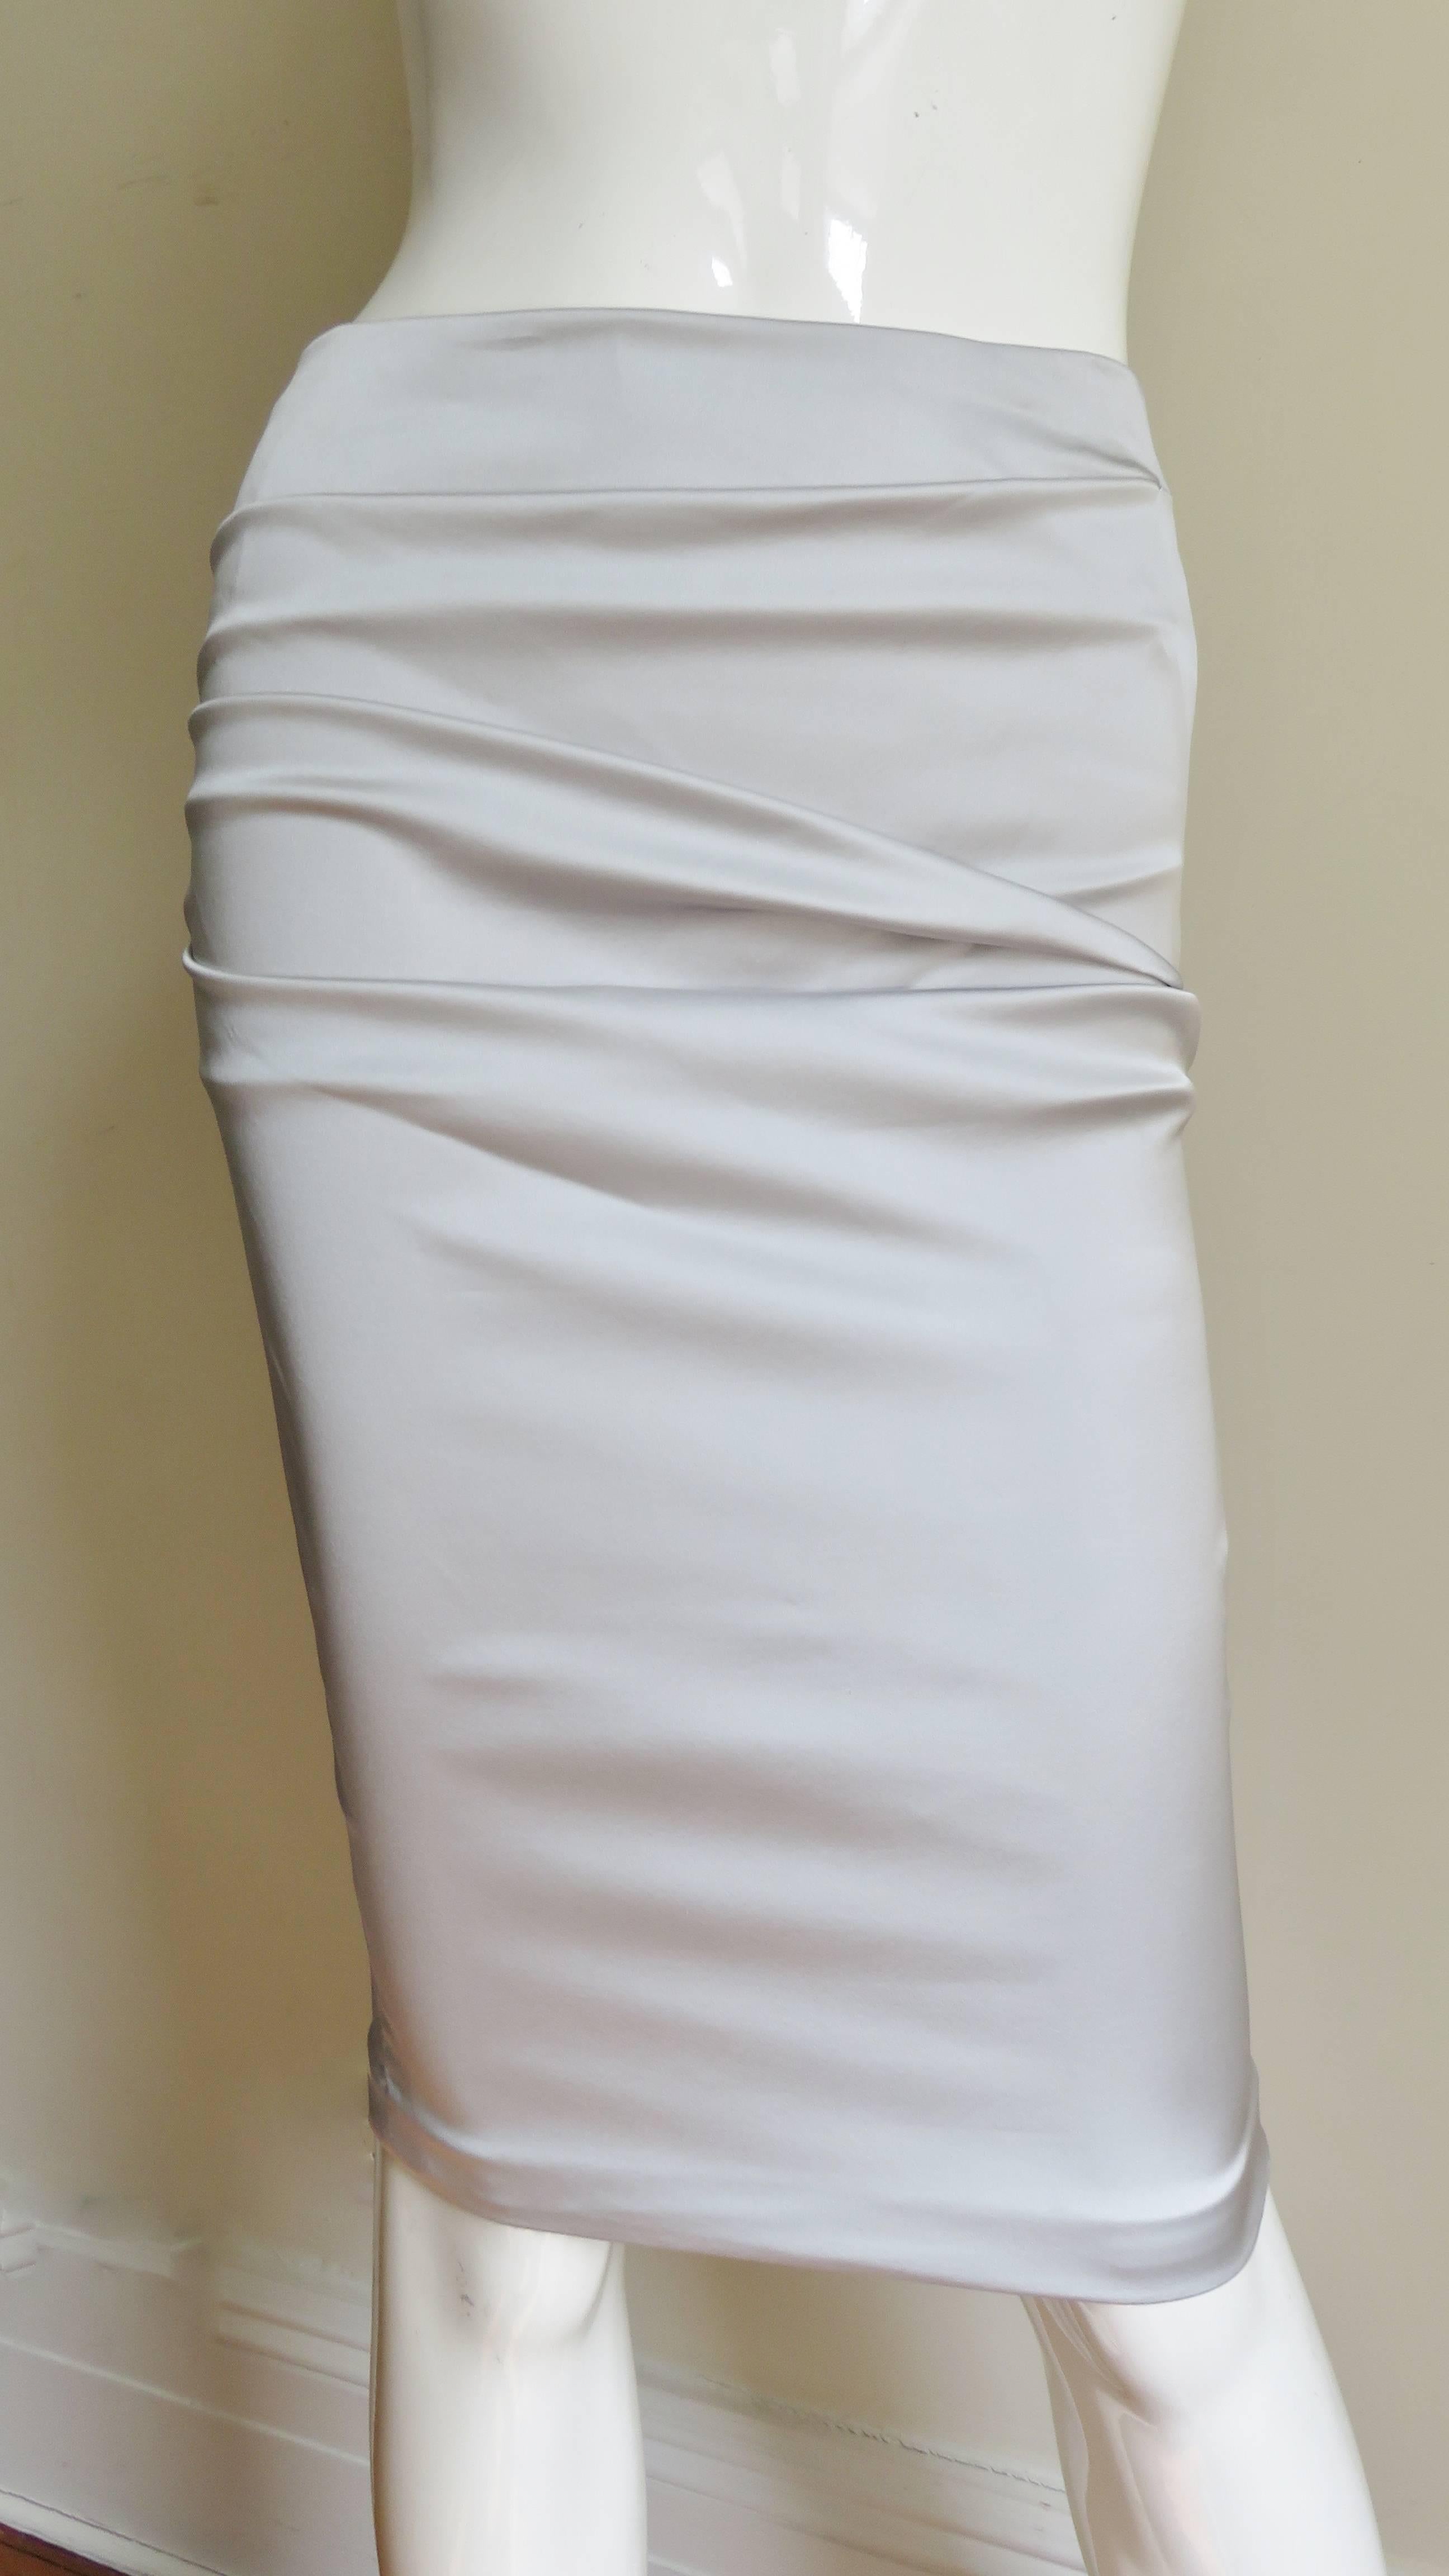 Jupe en soie stretch gris clair de Dolce & Gabbana.  Il s'agit d'une jupe de style crayon avec des fronces horizontales sur le devant et le dos.  La jupe est dotée d'un laçage fonctionnel au centre de la longueur du dos. Il est doté d'une fermeture